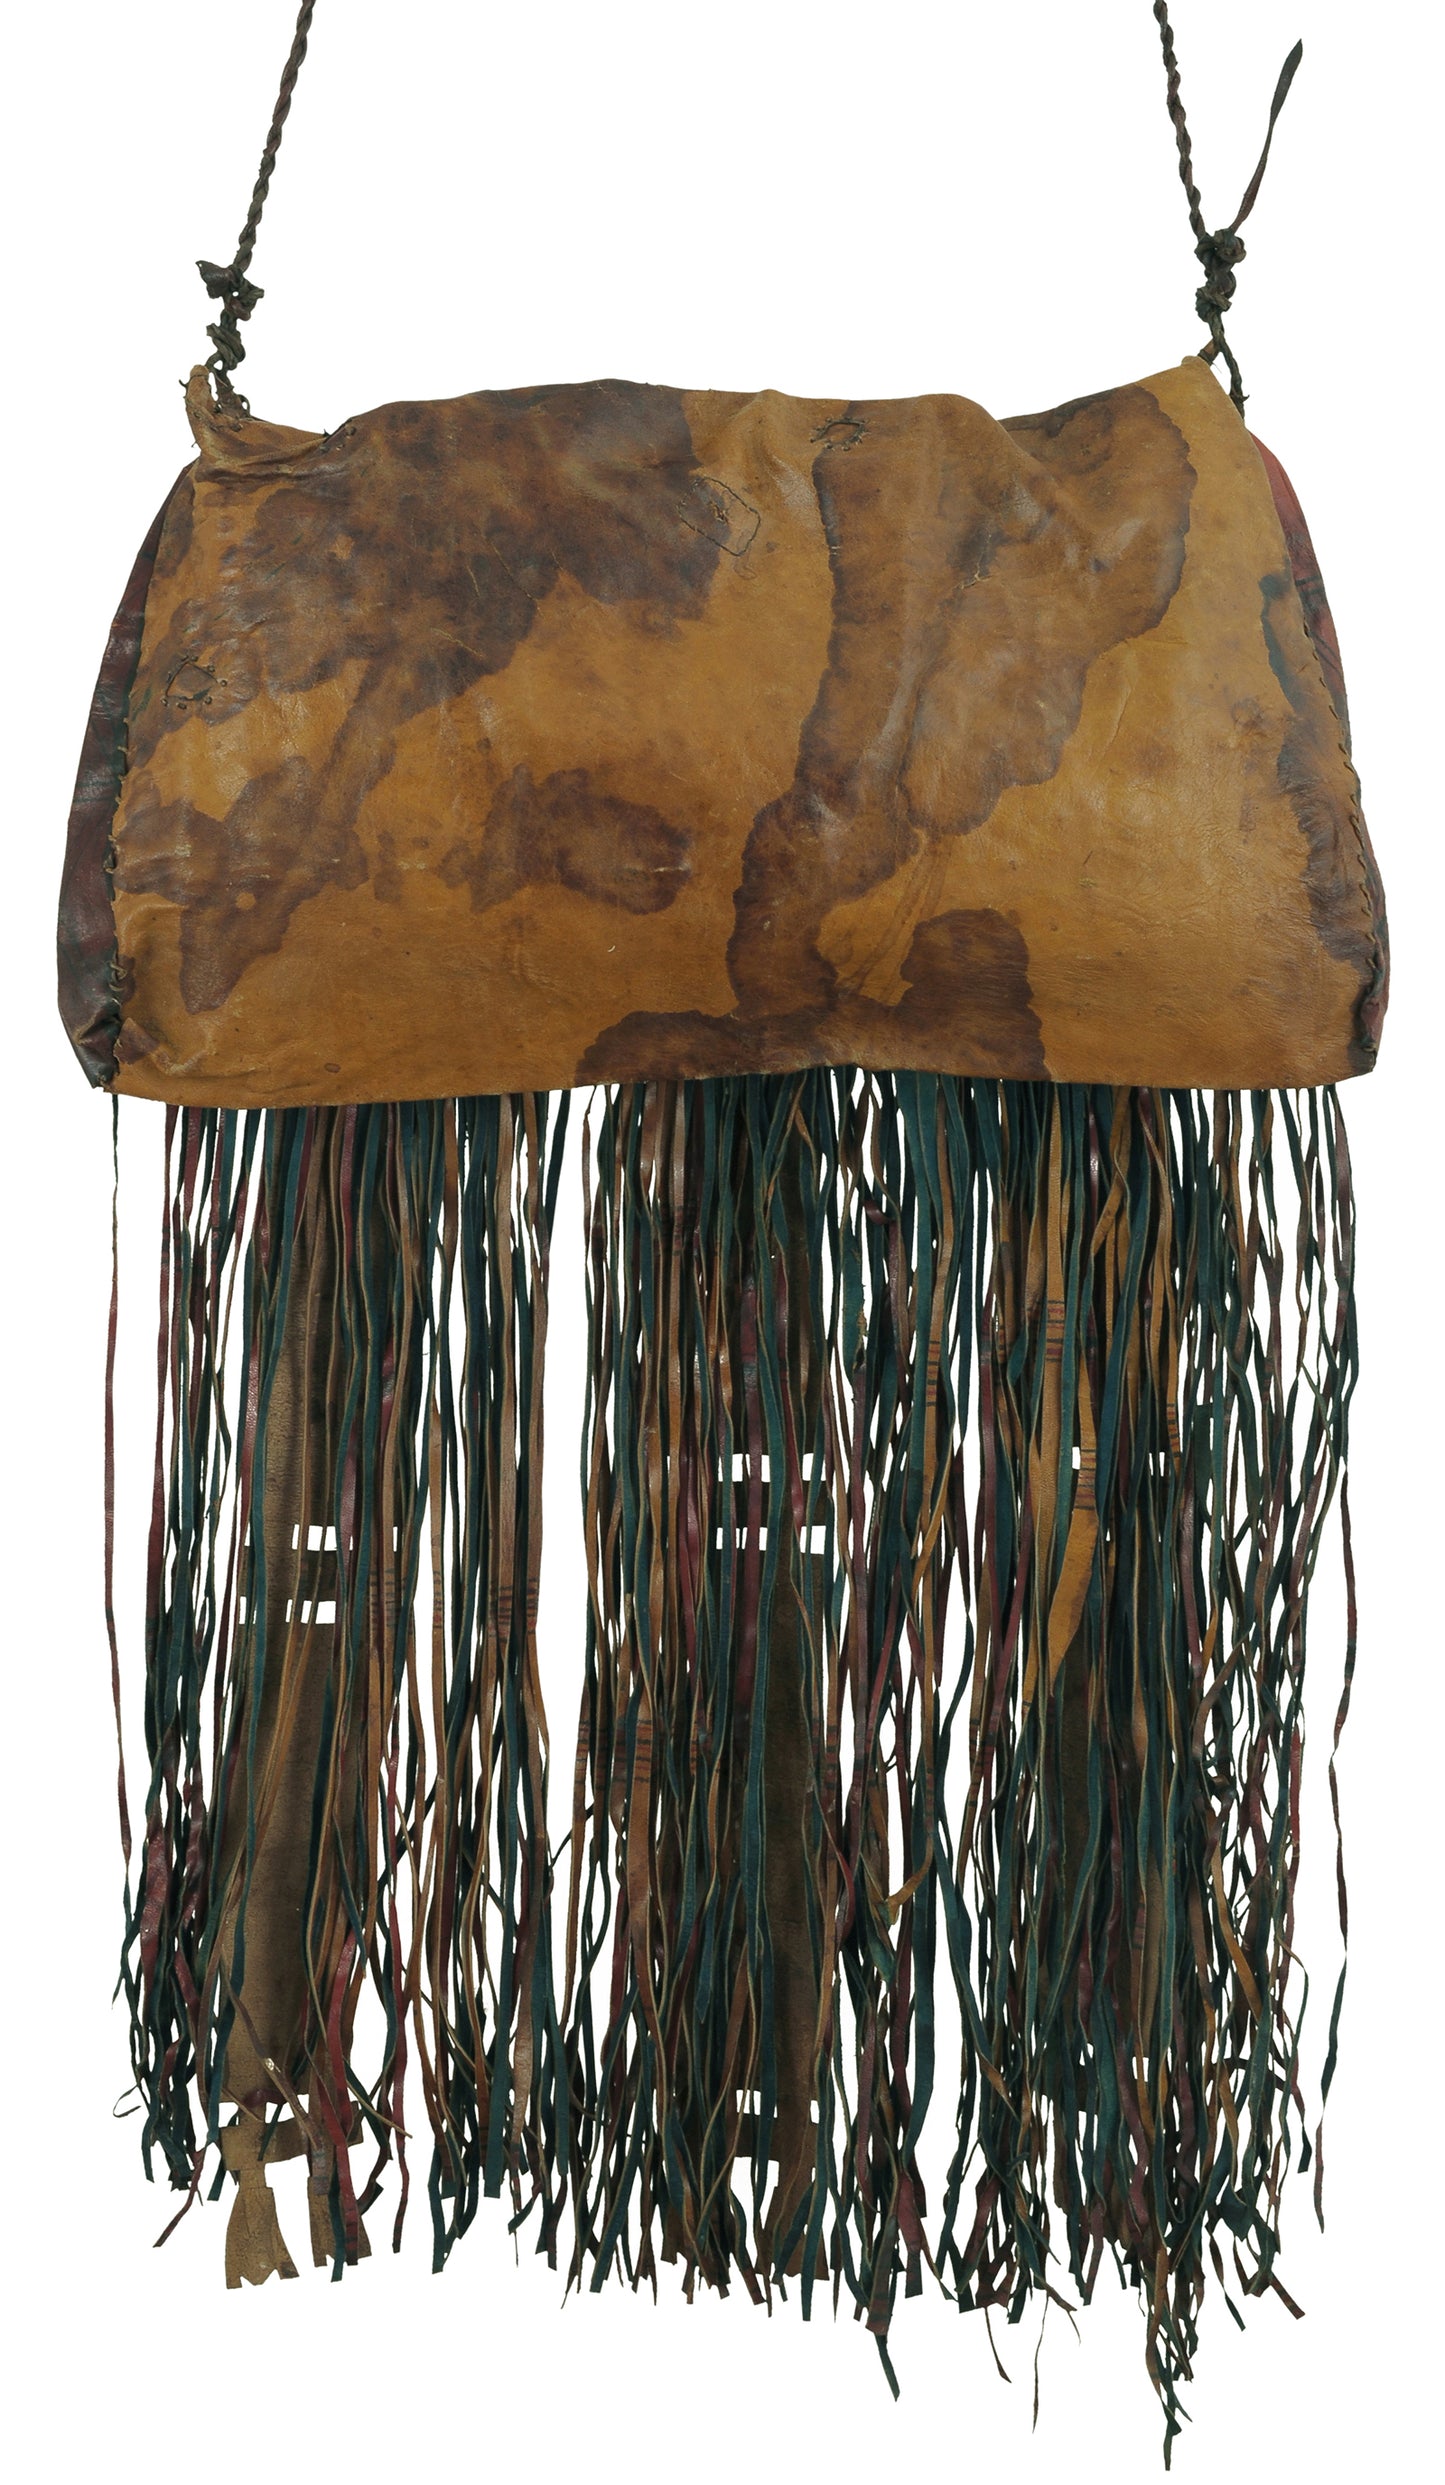 Винтажная кожаная сумка туарегов ручной работы с геометрическим орнаментом Нигер